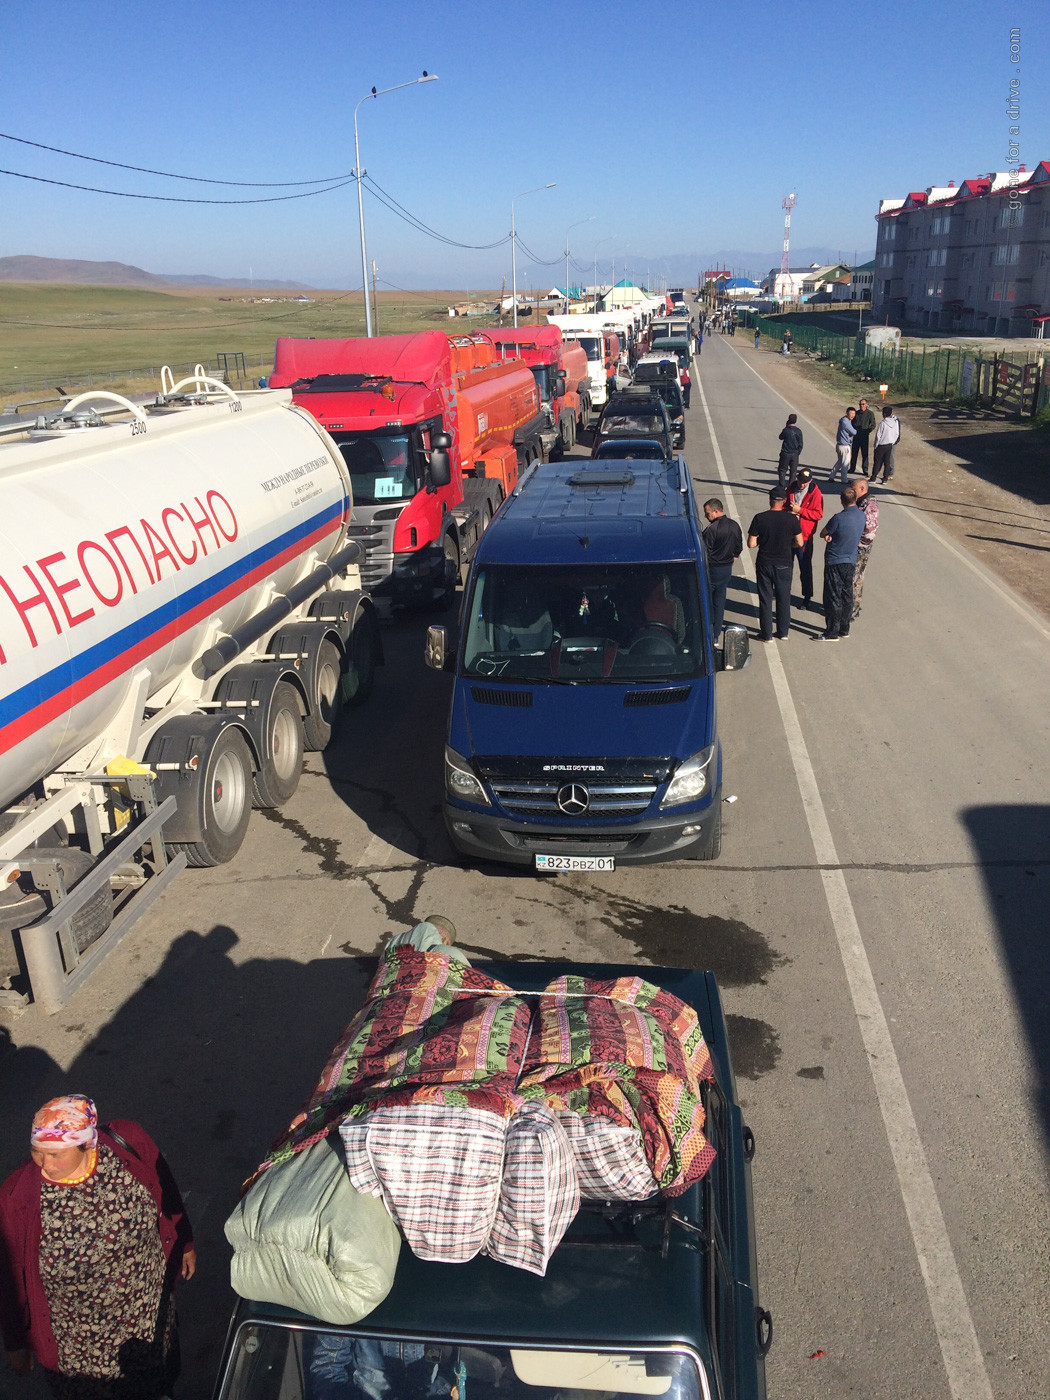 Grenze Russland Mongolei, Montag früh, 15 min vor Öffnung